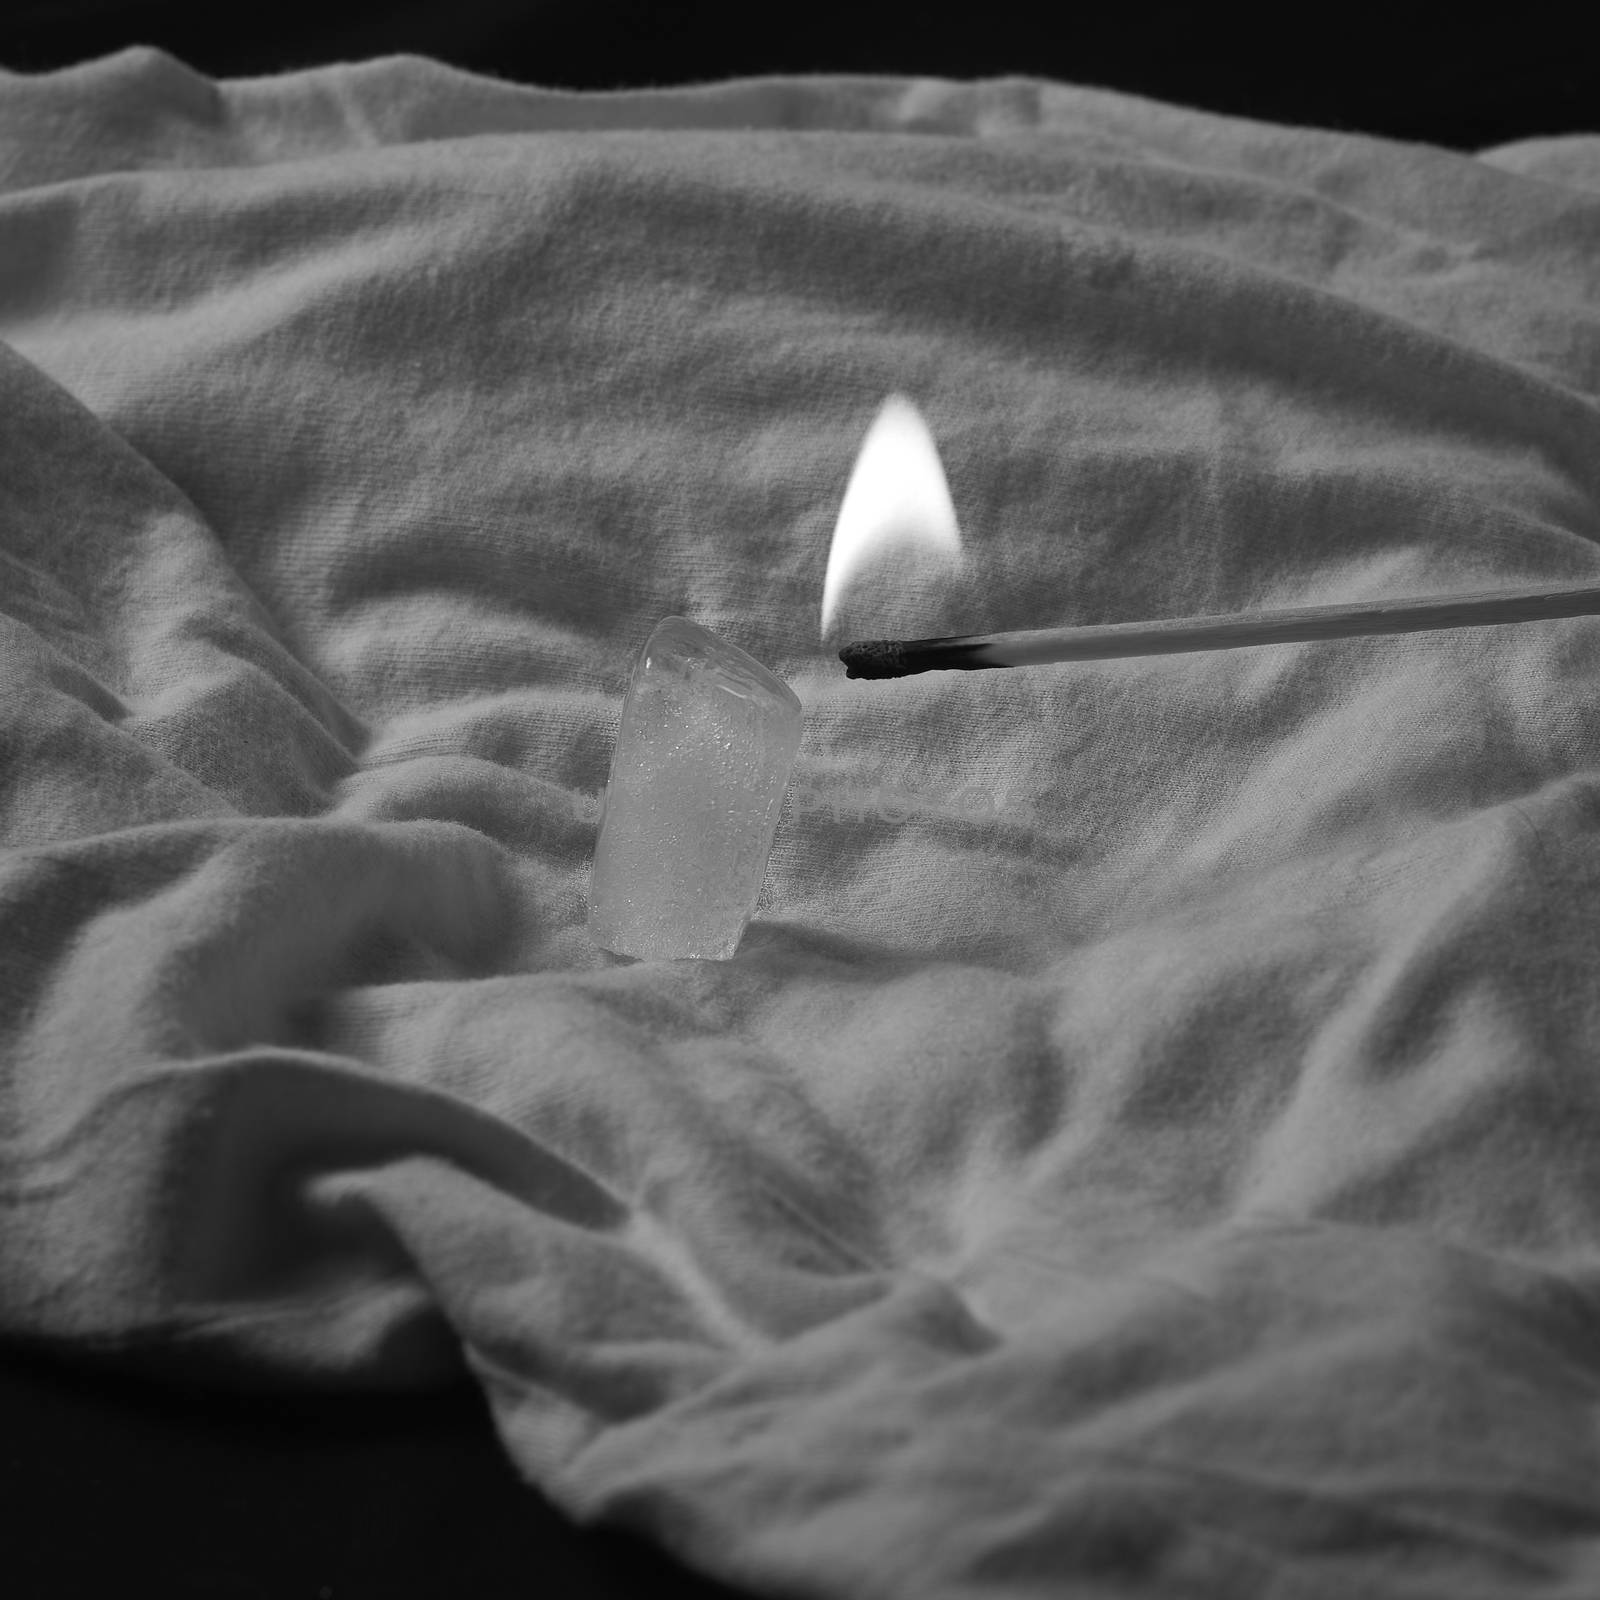 Burning match melting ice cube, black and white, white background